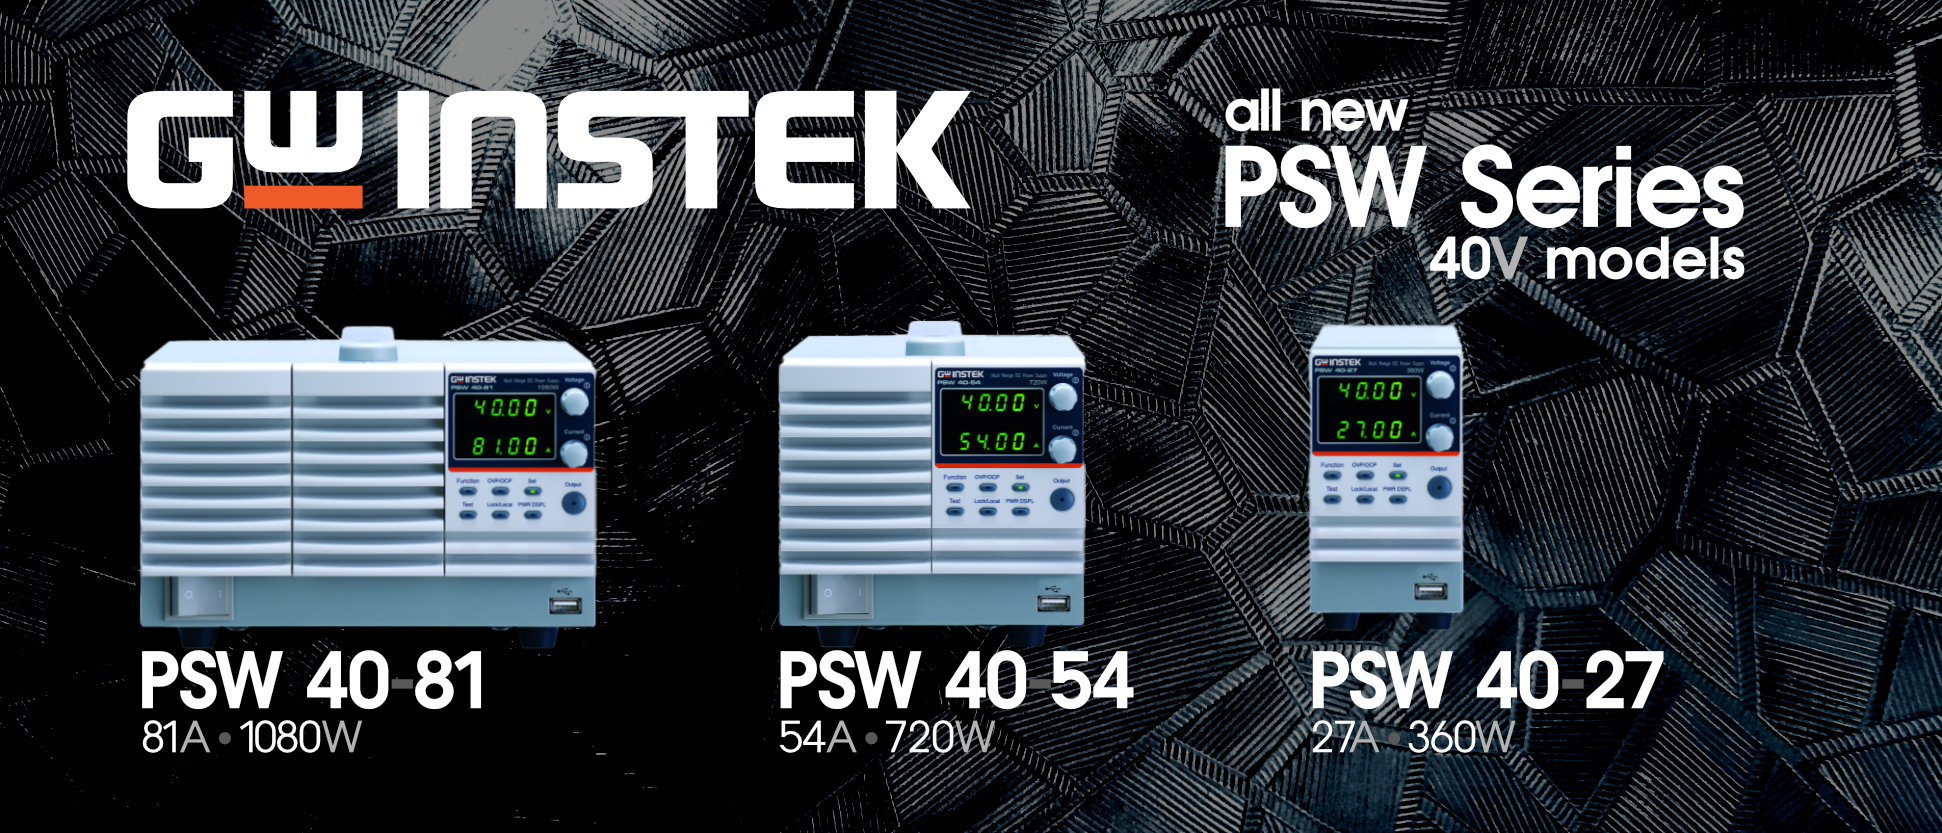 GW Instek new PSW Series 40V Model